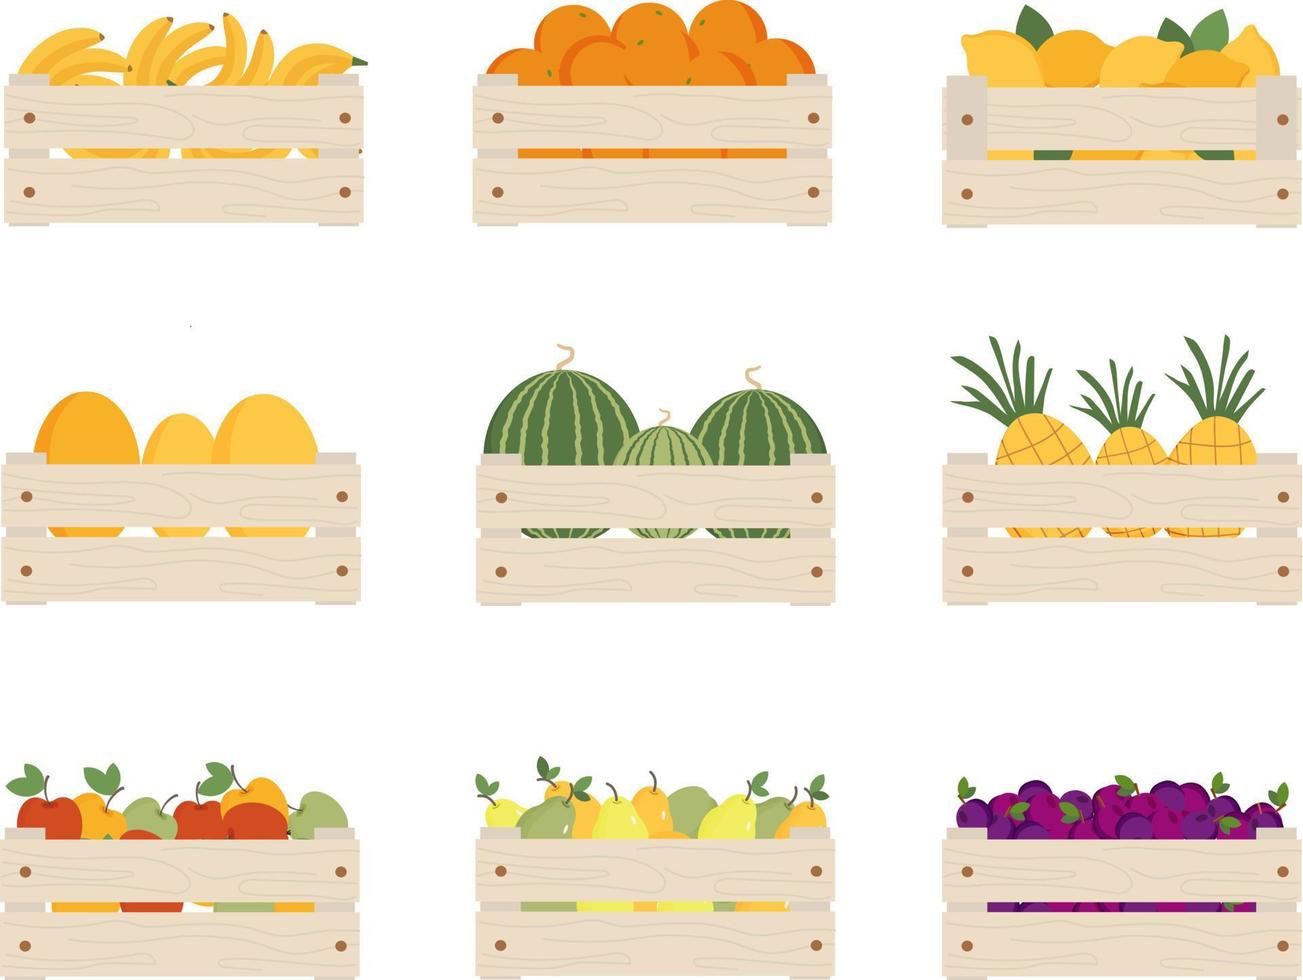 ensemble de fruits différents dans des caisses en bois. banane, orange, citron, melon, melon d'eau, ananas, pomme, poire, prune dans des boîtes. fruits de saison, aliments biologiques, récolte. illustration vectorielle. vecteur